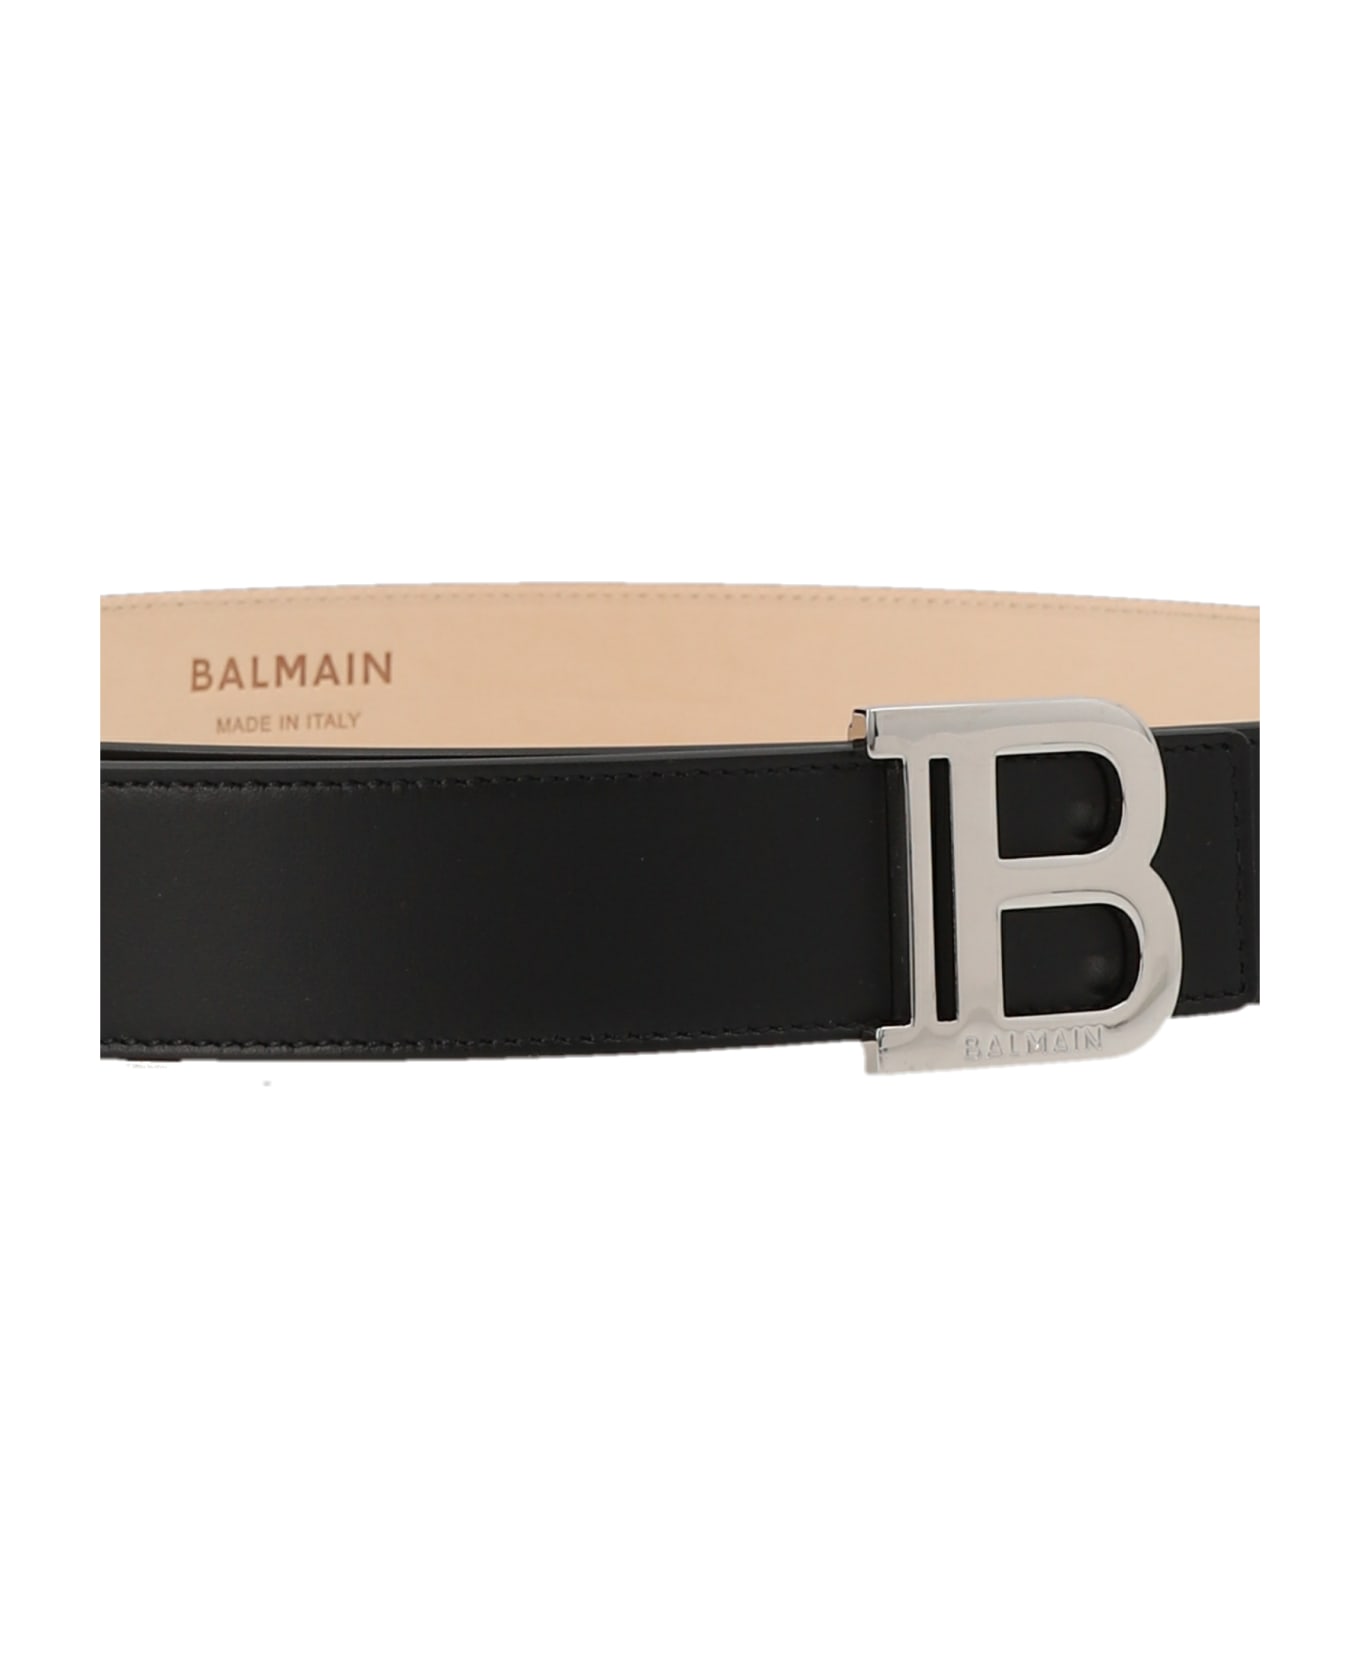 Balmain 'b' Belt - Black  